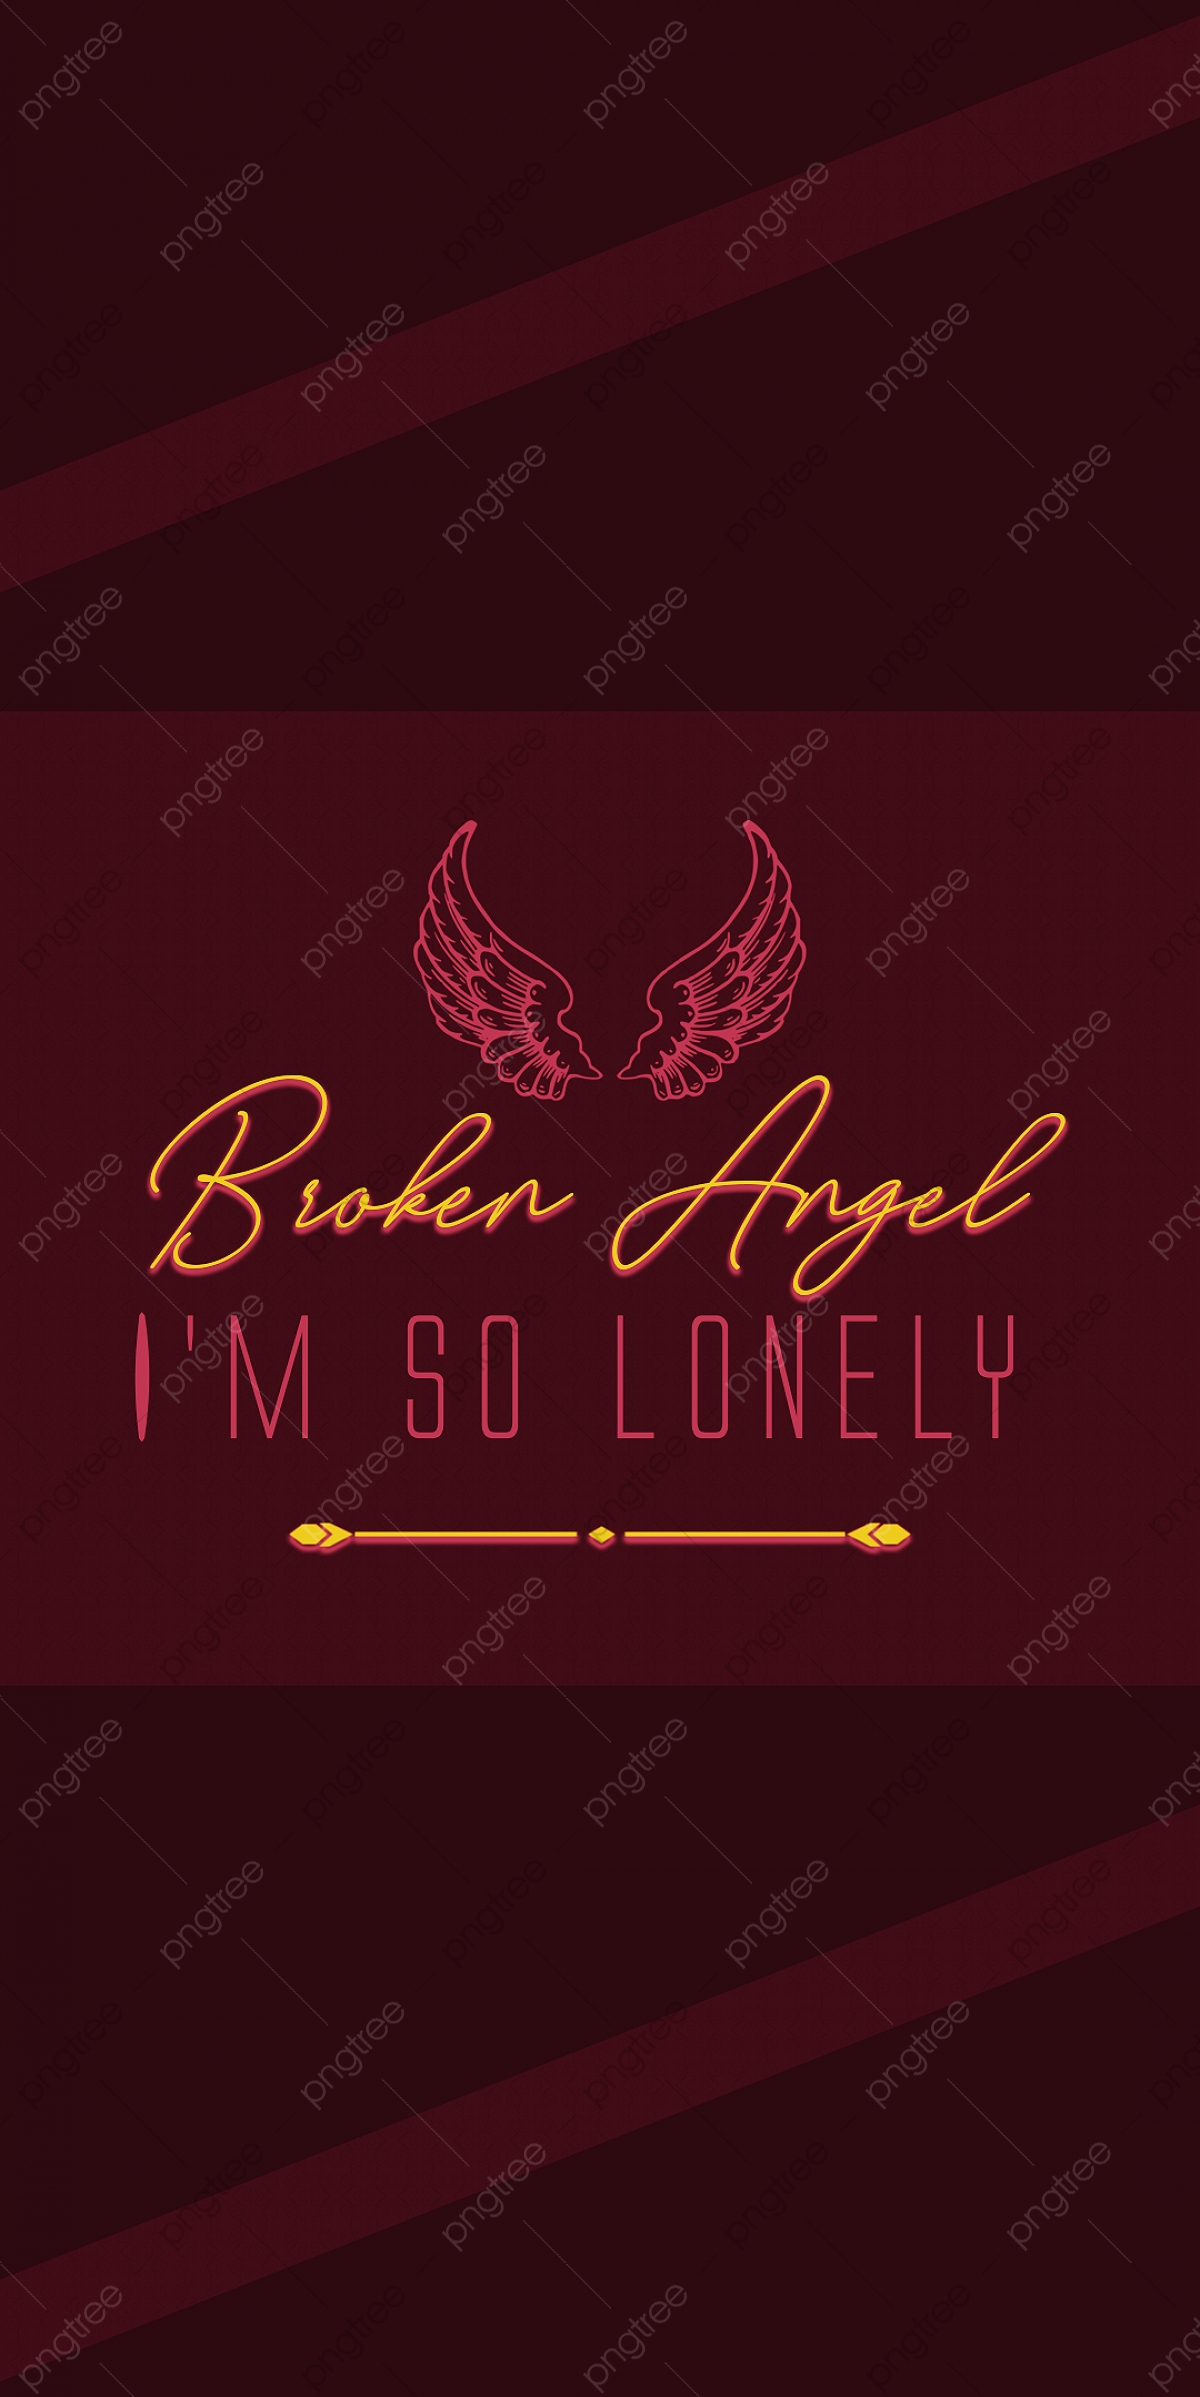 Broken Angel Images Wallpapers